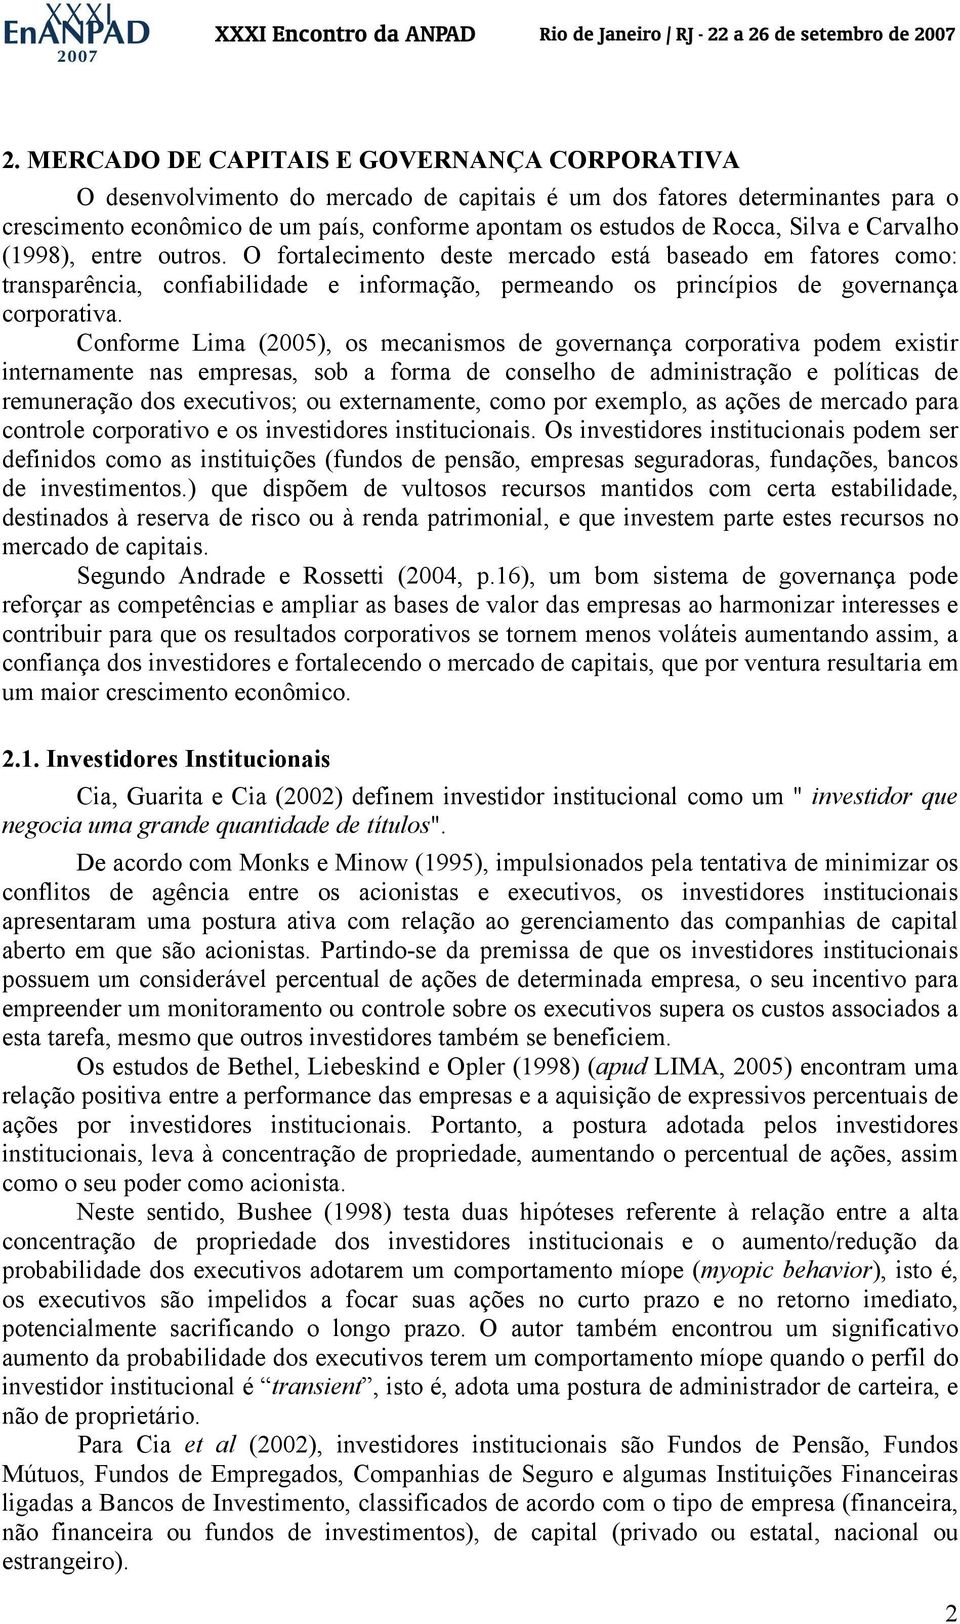 Conforme Lima (2005), os mecanismos de governança corporativa podem existir internamente nas empresas, sob a forma de conselho de administração e políticas de remuneração dos executivos; ou